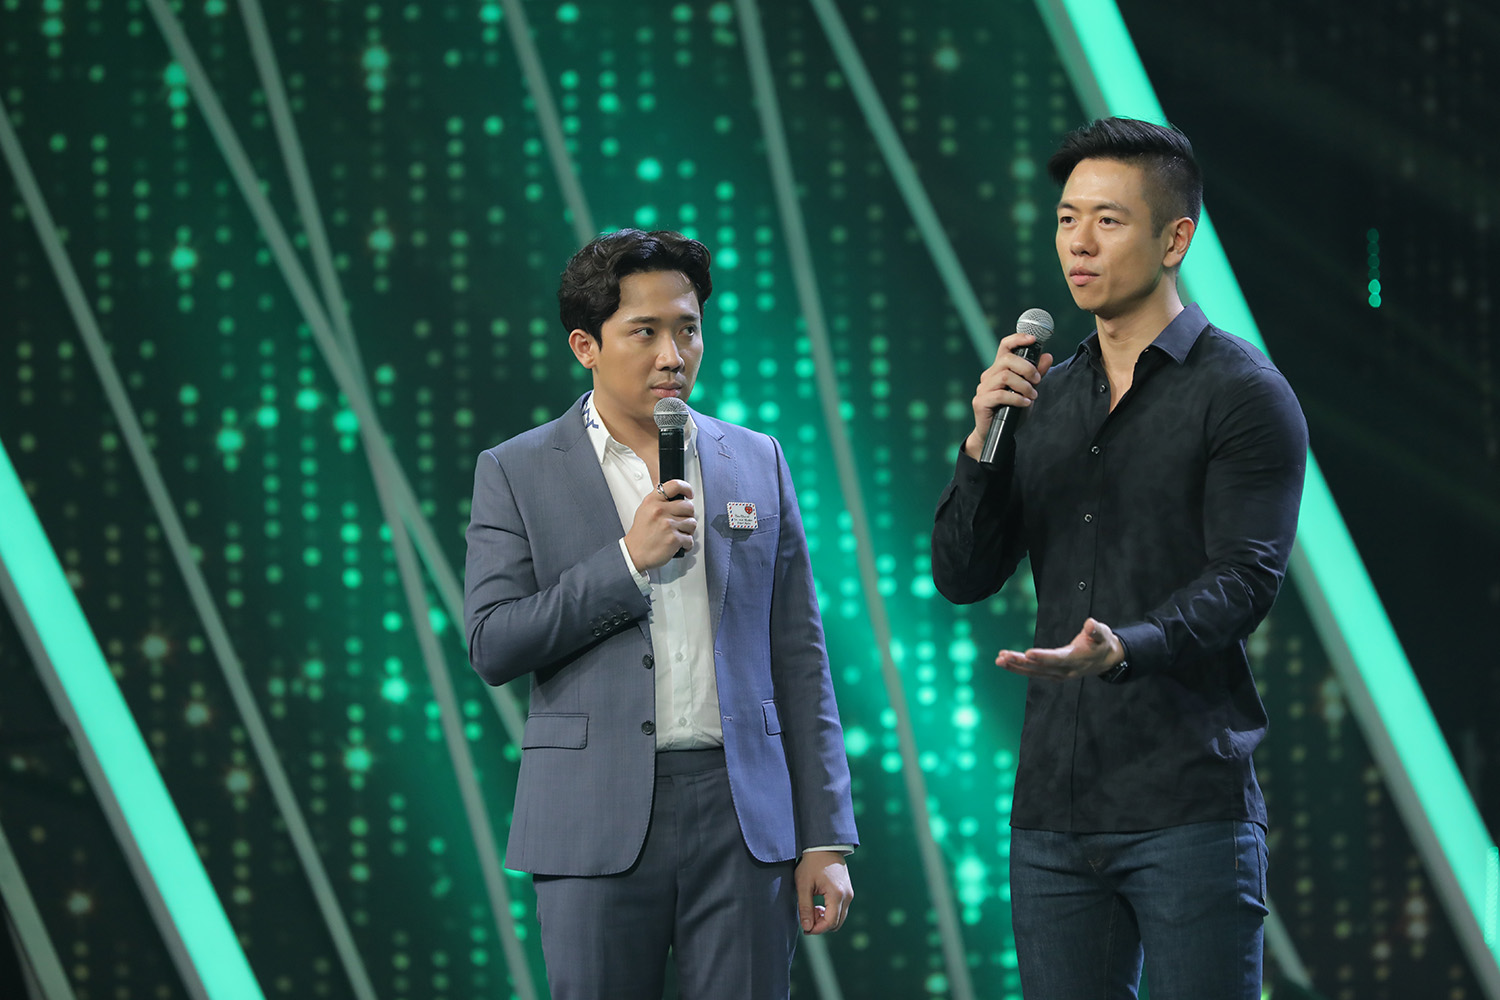 Michael Trương tại chương trình “Người ấy là ai“. Ảnh: Nhà sản xuất cung cấp